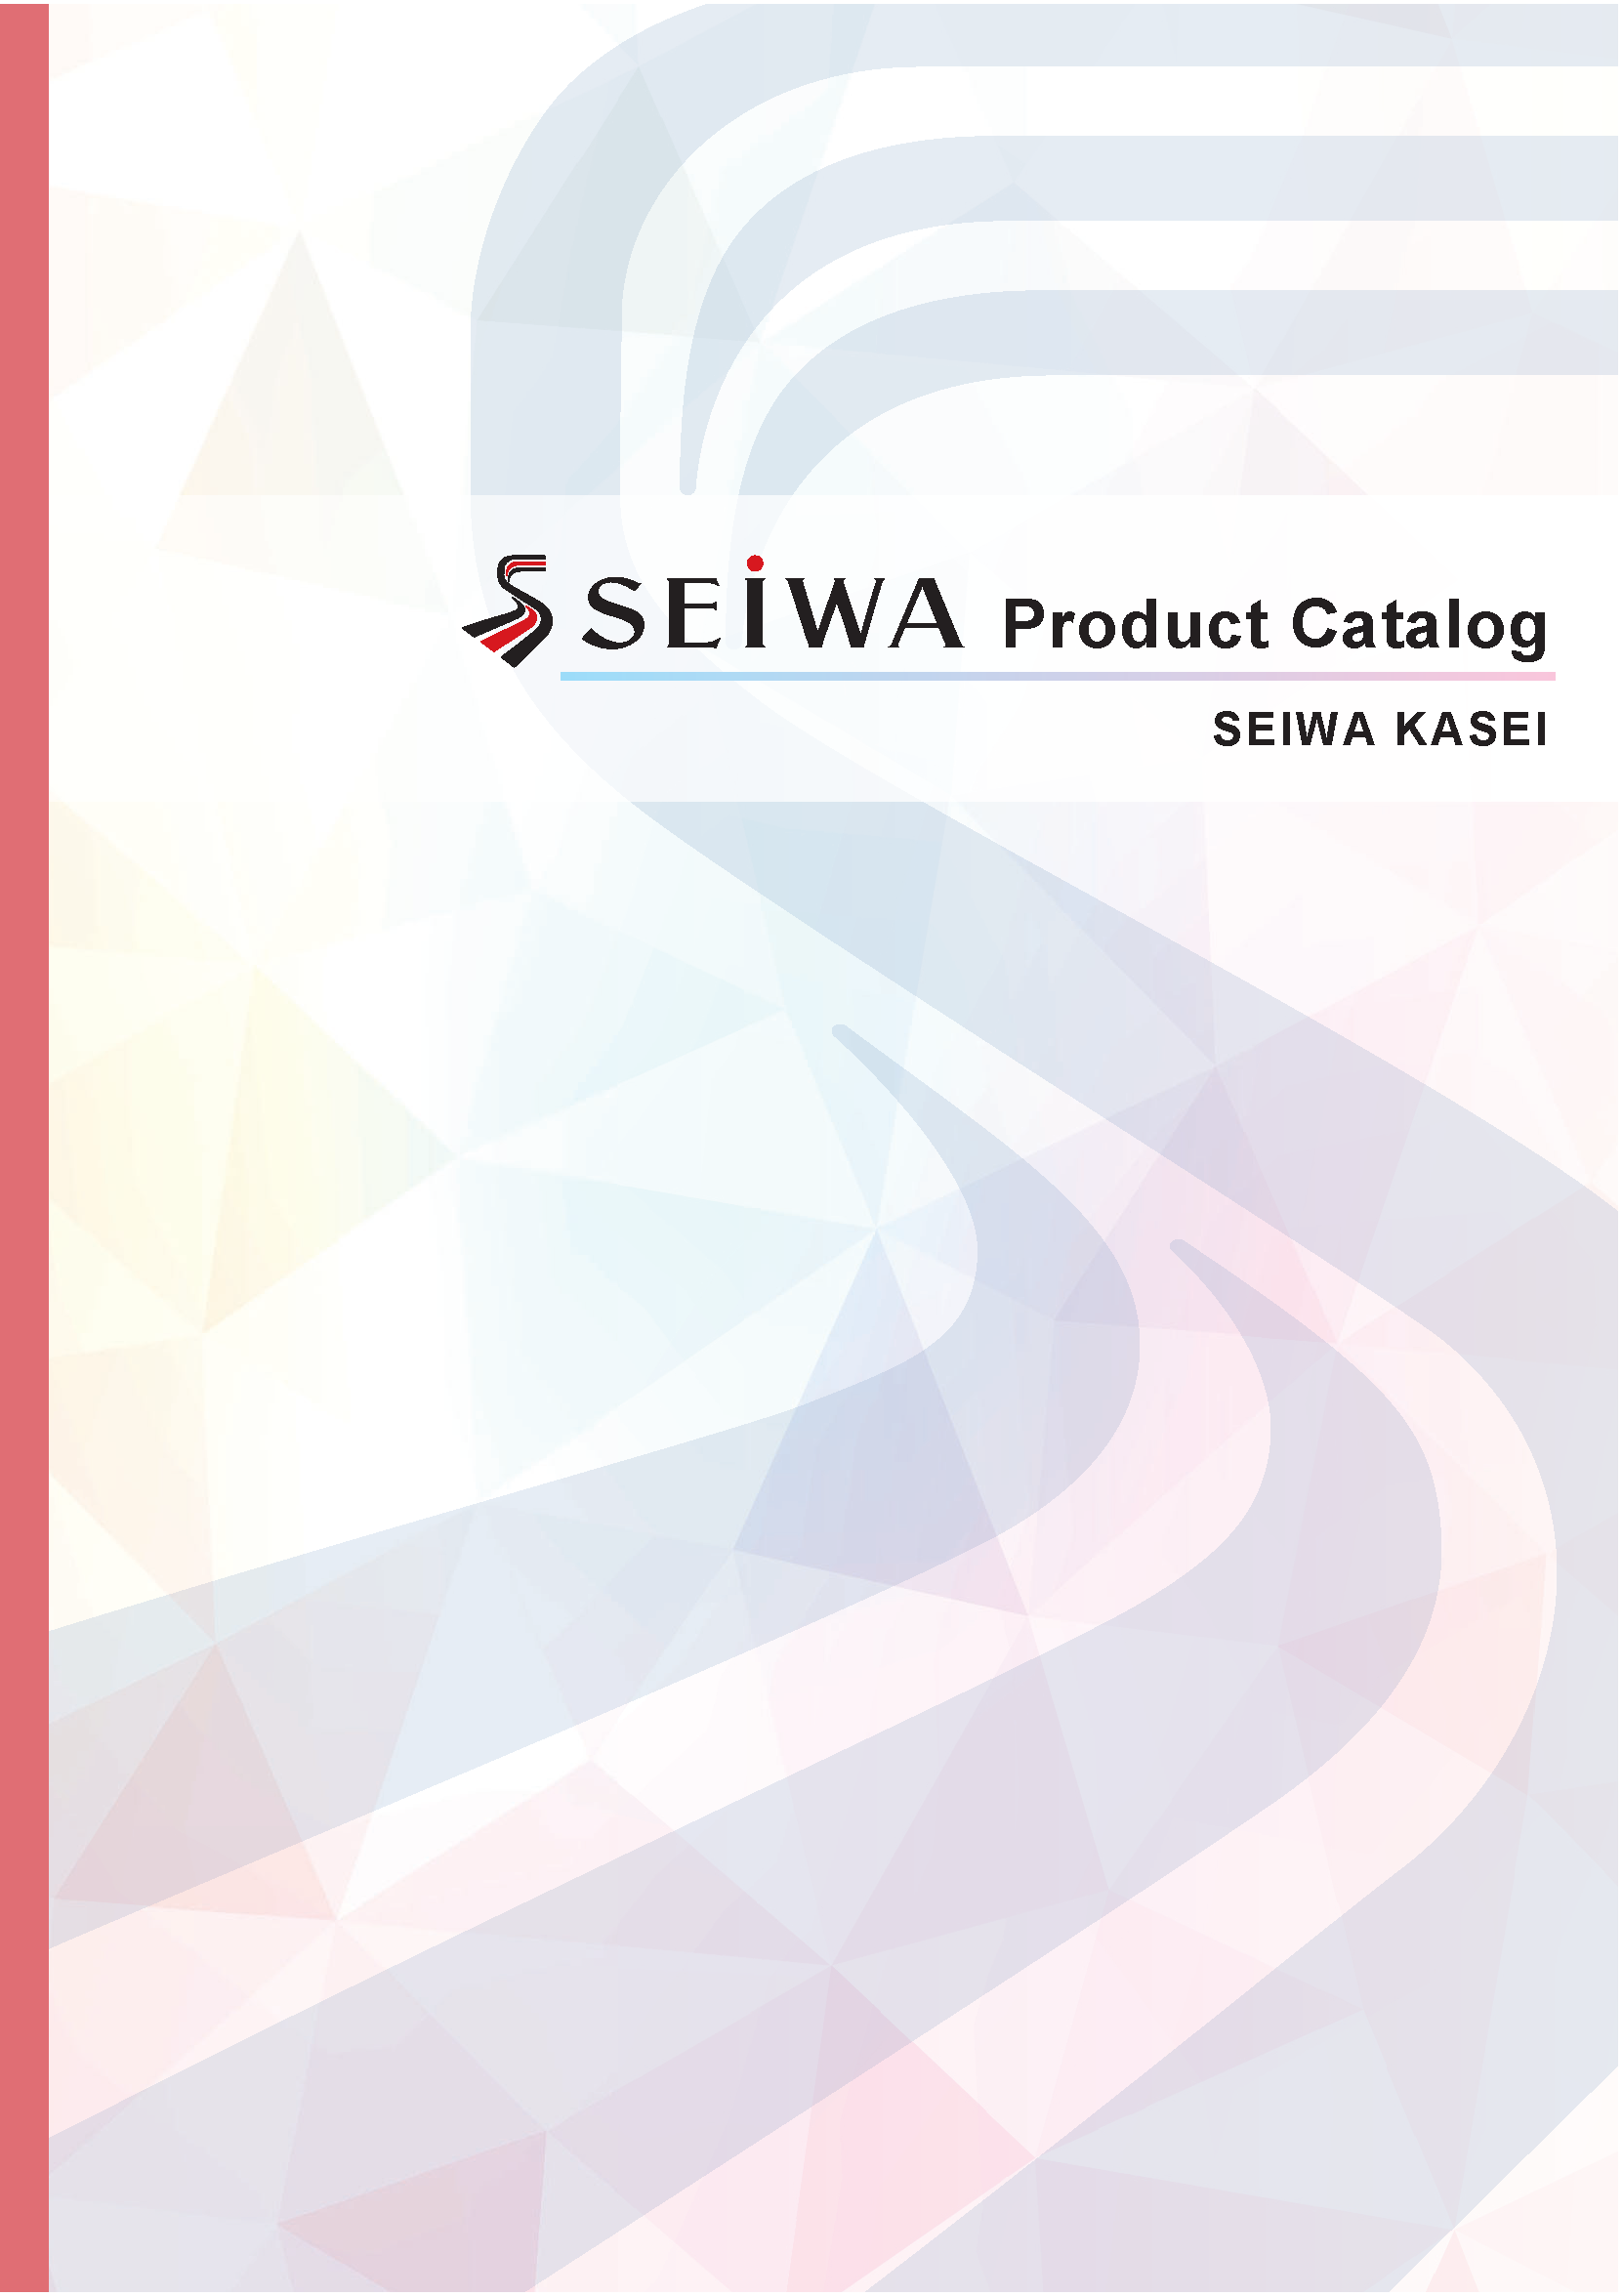 Product Catalog of SEIWA KASEI